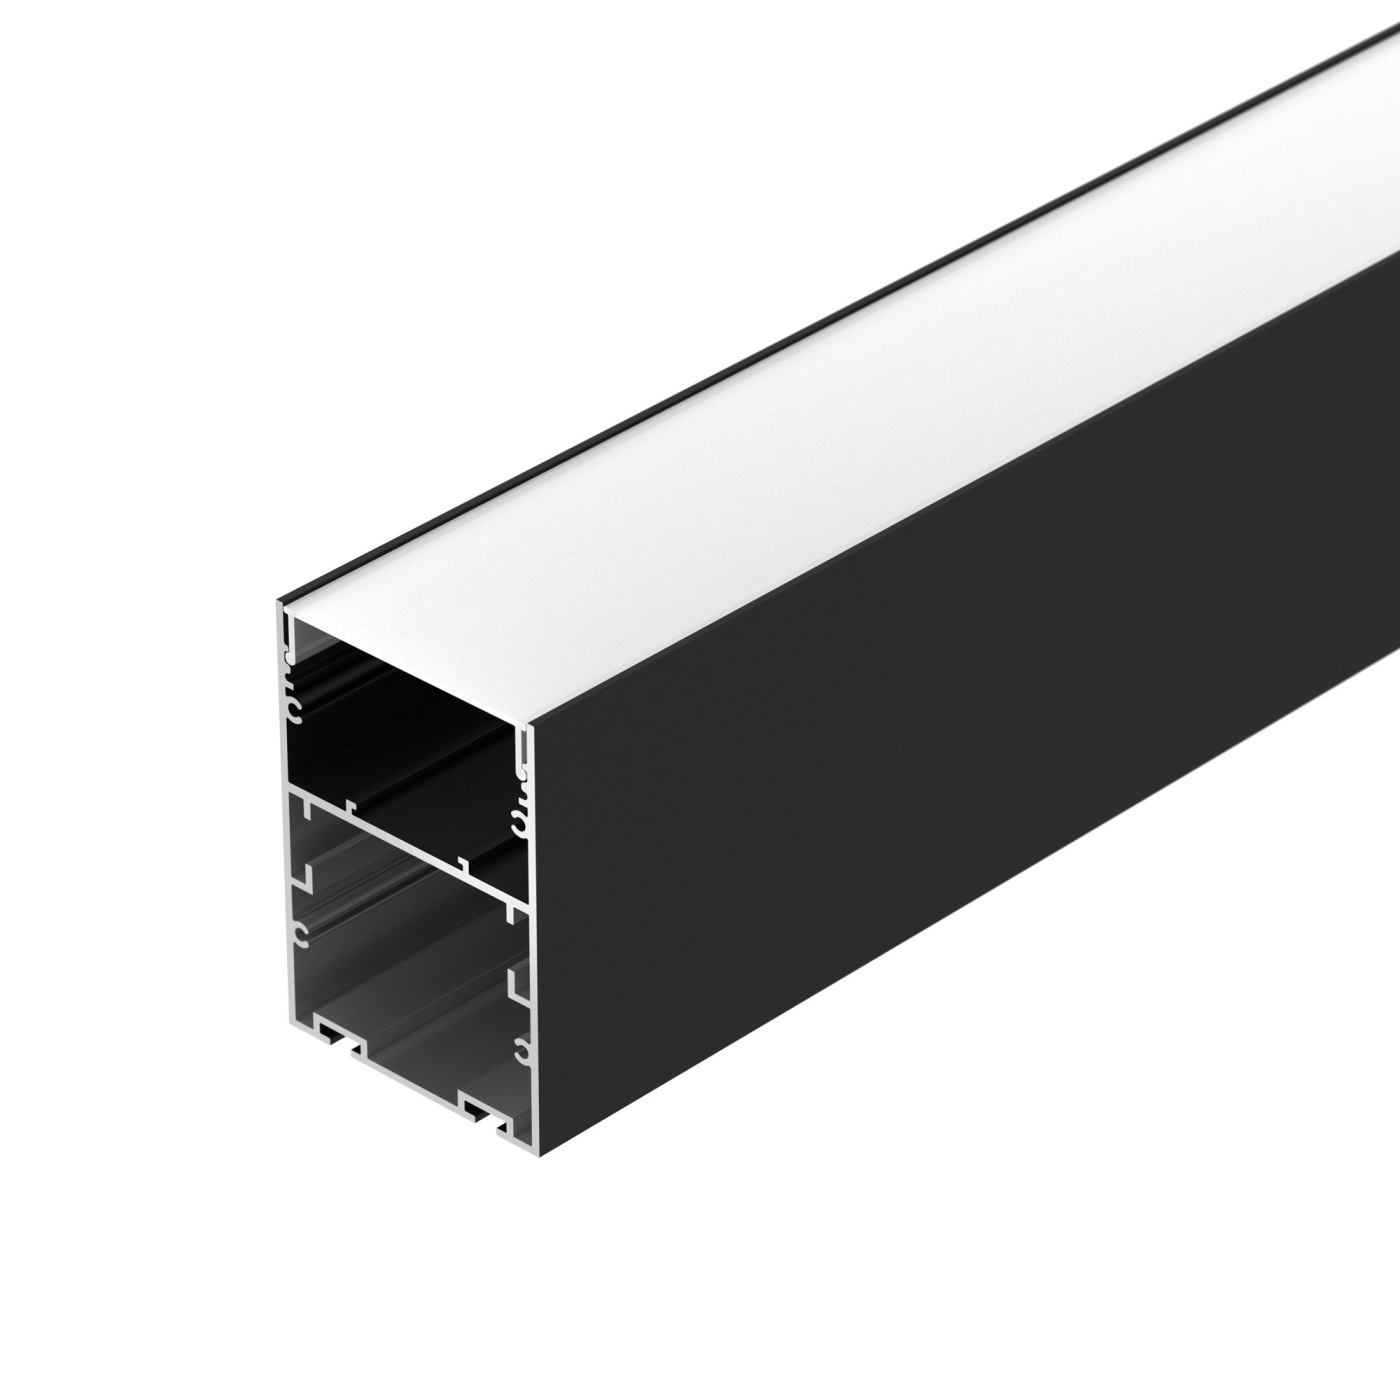 Профиль ARH-LINE-6085-2000 BLACK система для раздвижных дверей лофт 2000 мм сталь чёрный